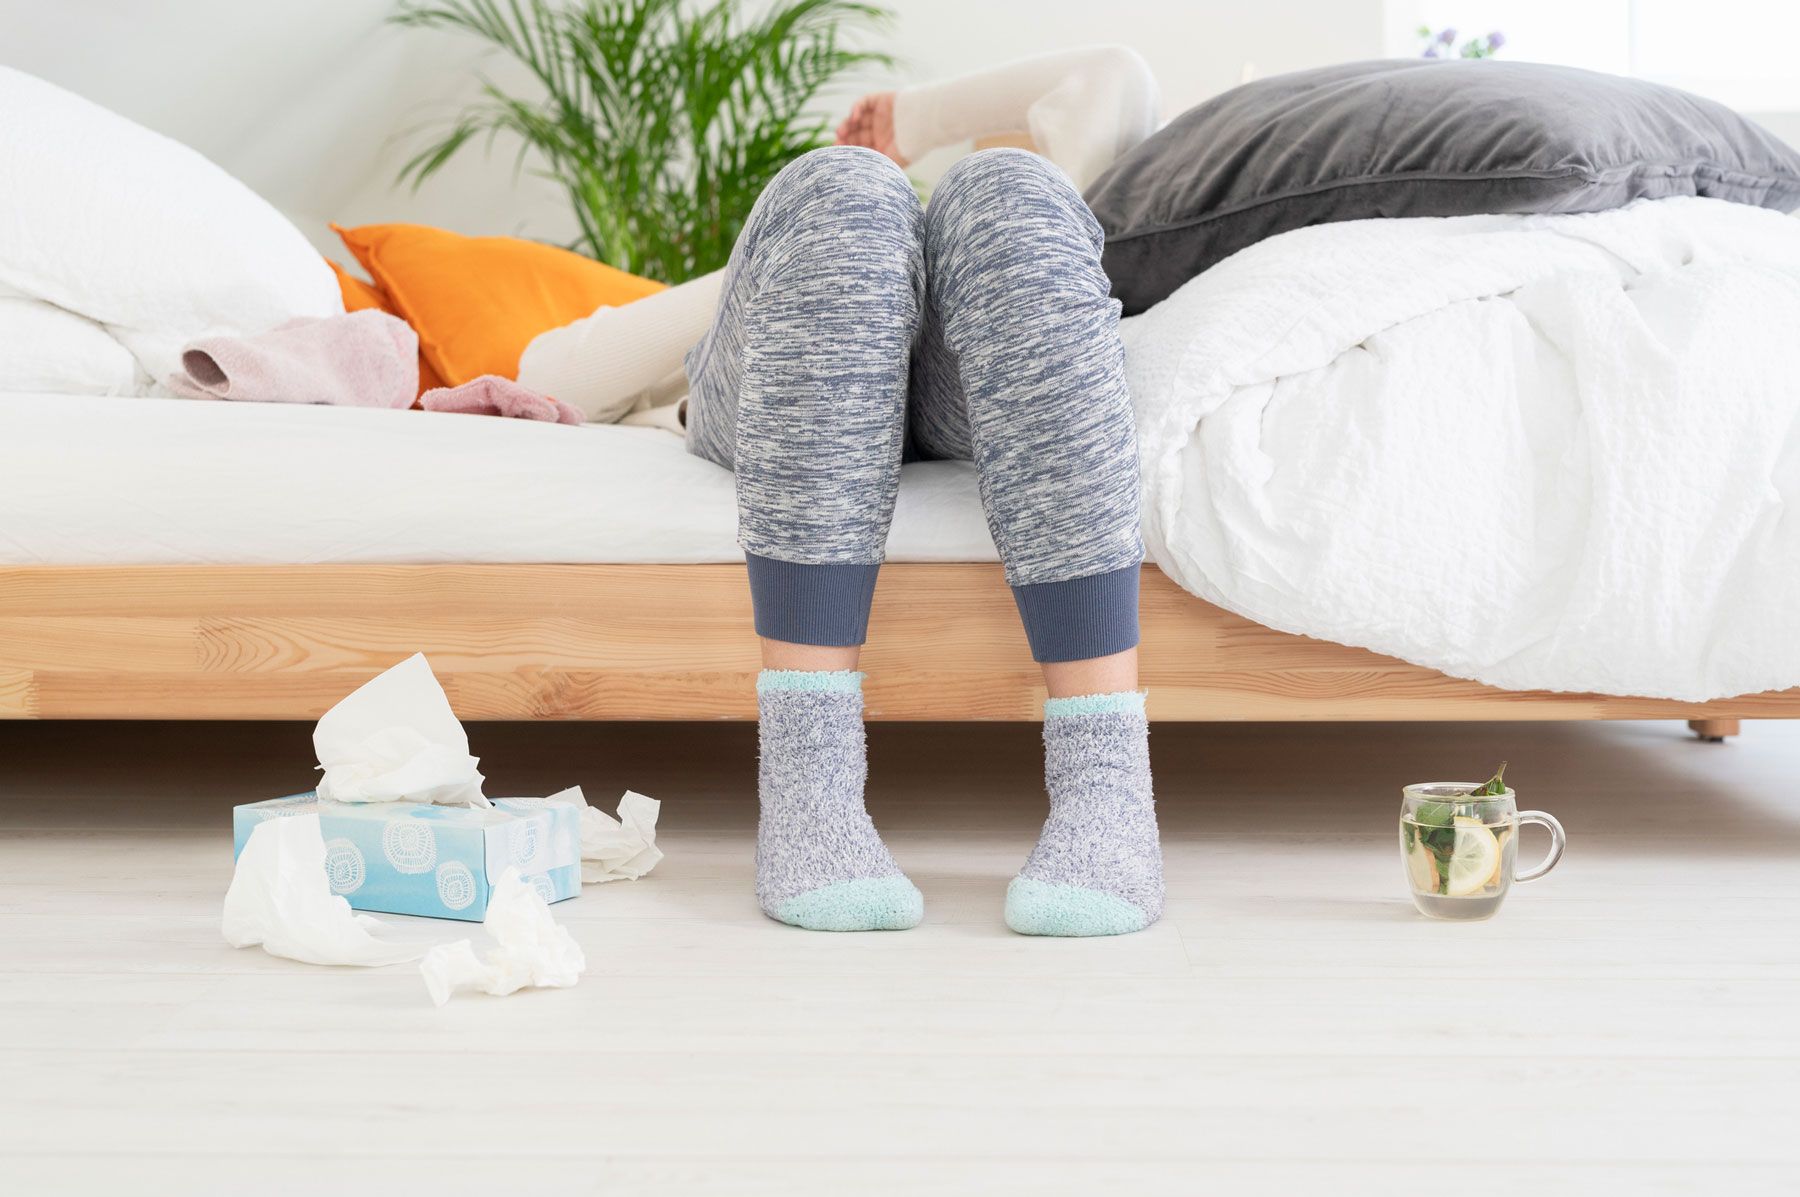 Conseils surprenants pour la prévention du rhume et de la grippe - Femme malade avec des mouchoirs